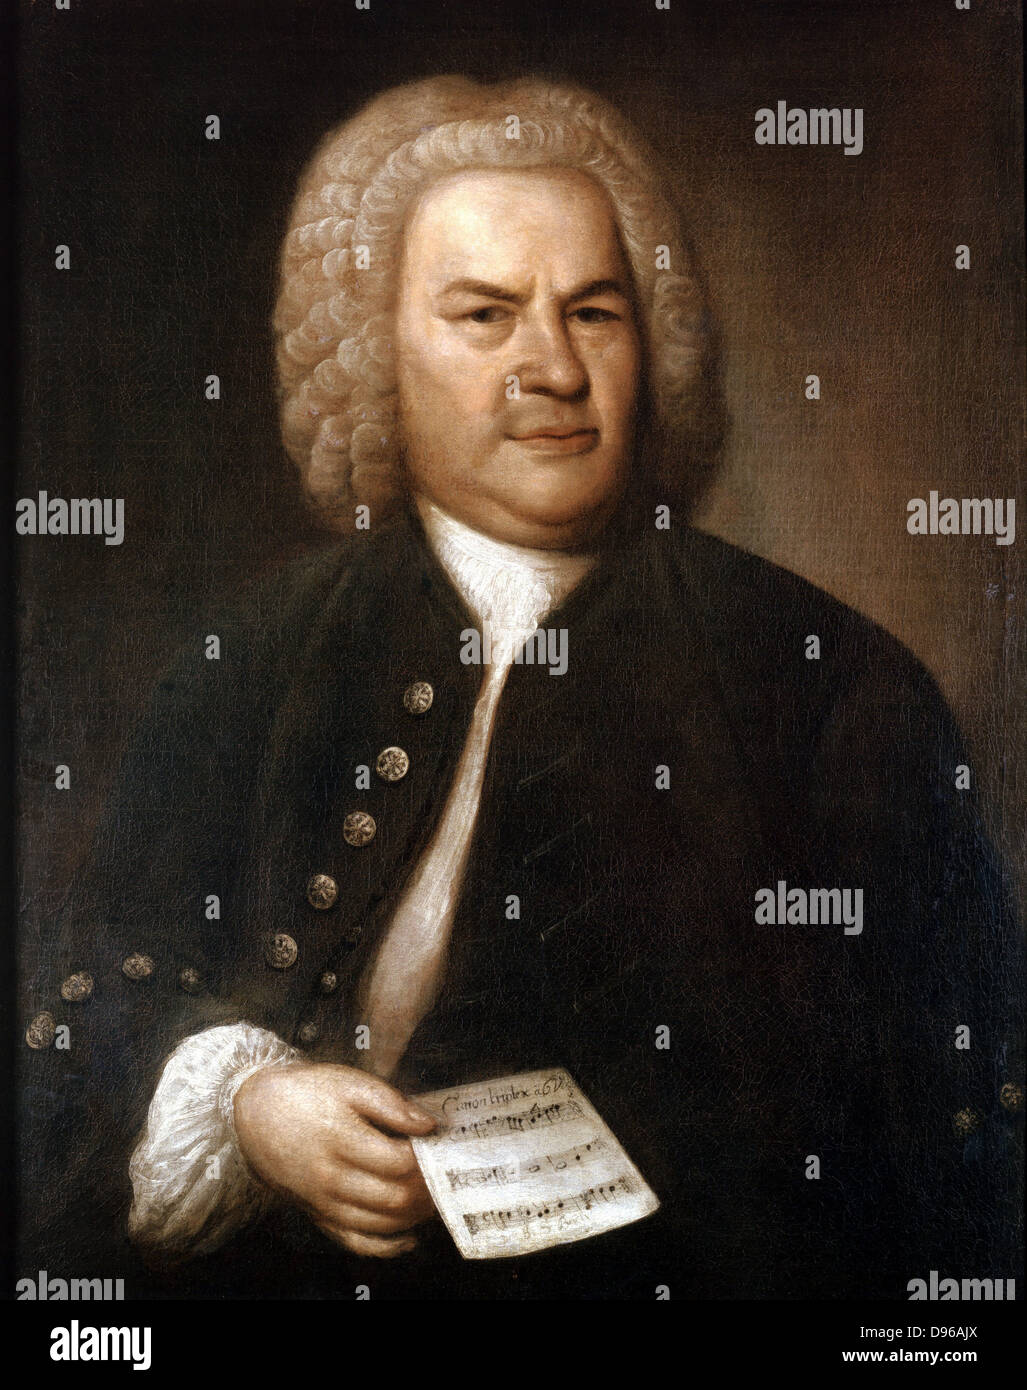 Johann Sebastian Bach (1685-1750) en 1746. Compositeur et organiste allemand. Portrait par Elias Gottlieb Haussmann. Stadtgeschichtliches Museum, Leipzig Banque D'Images